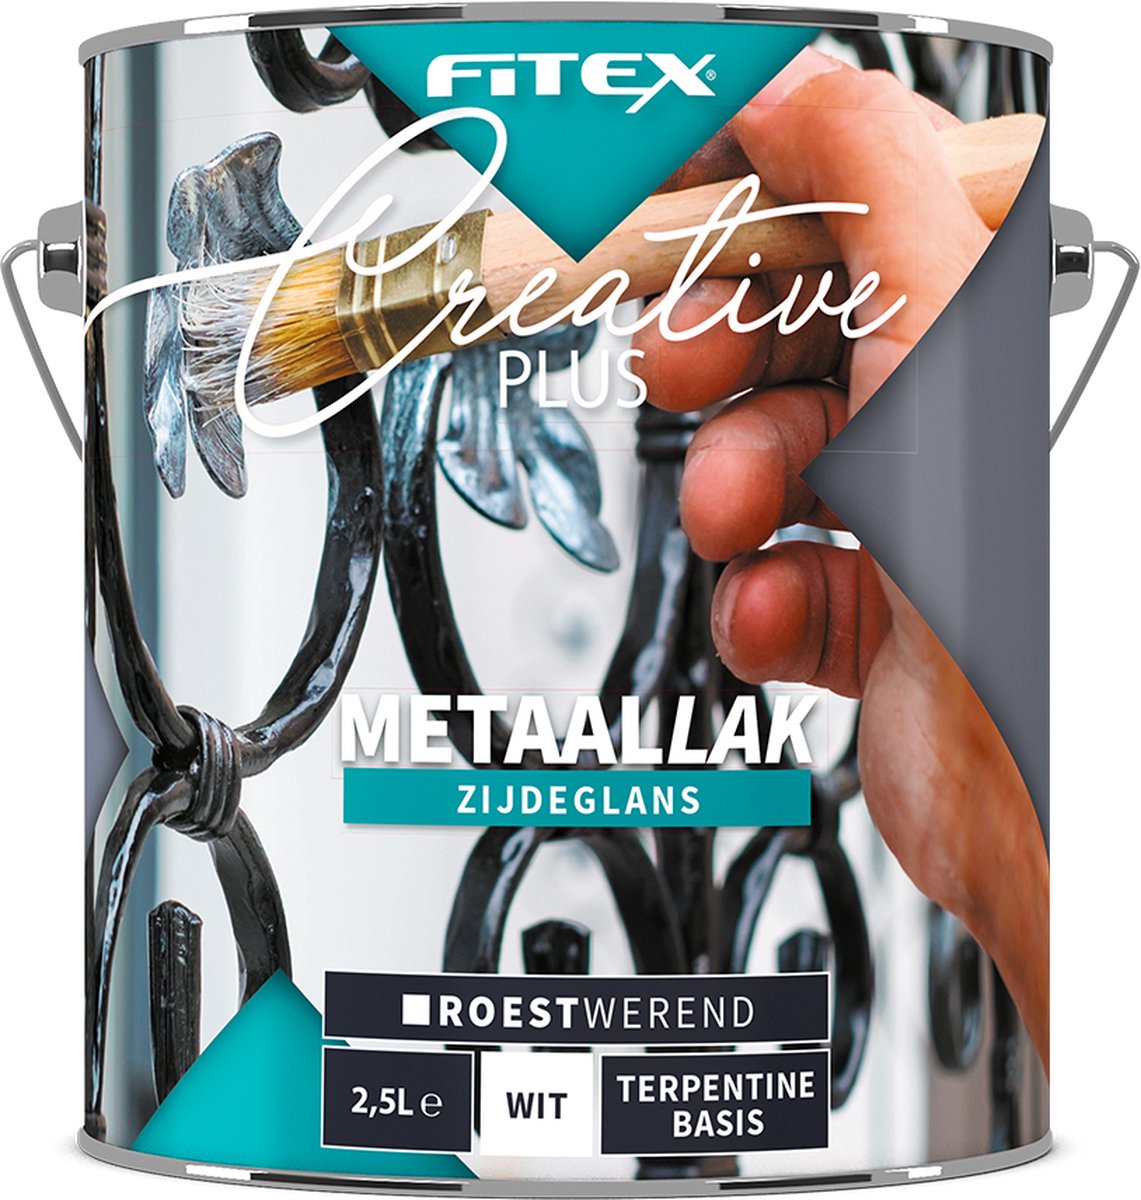 Fitex Creative+ Metaallak Zijdeglans - Lakverf - Dekkend - Binnen en buiten - Terpentine basis - Zijdeglans